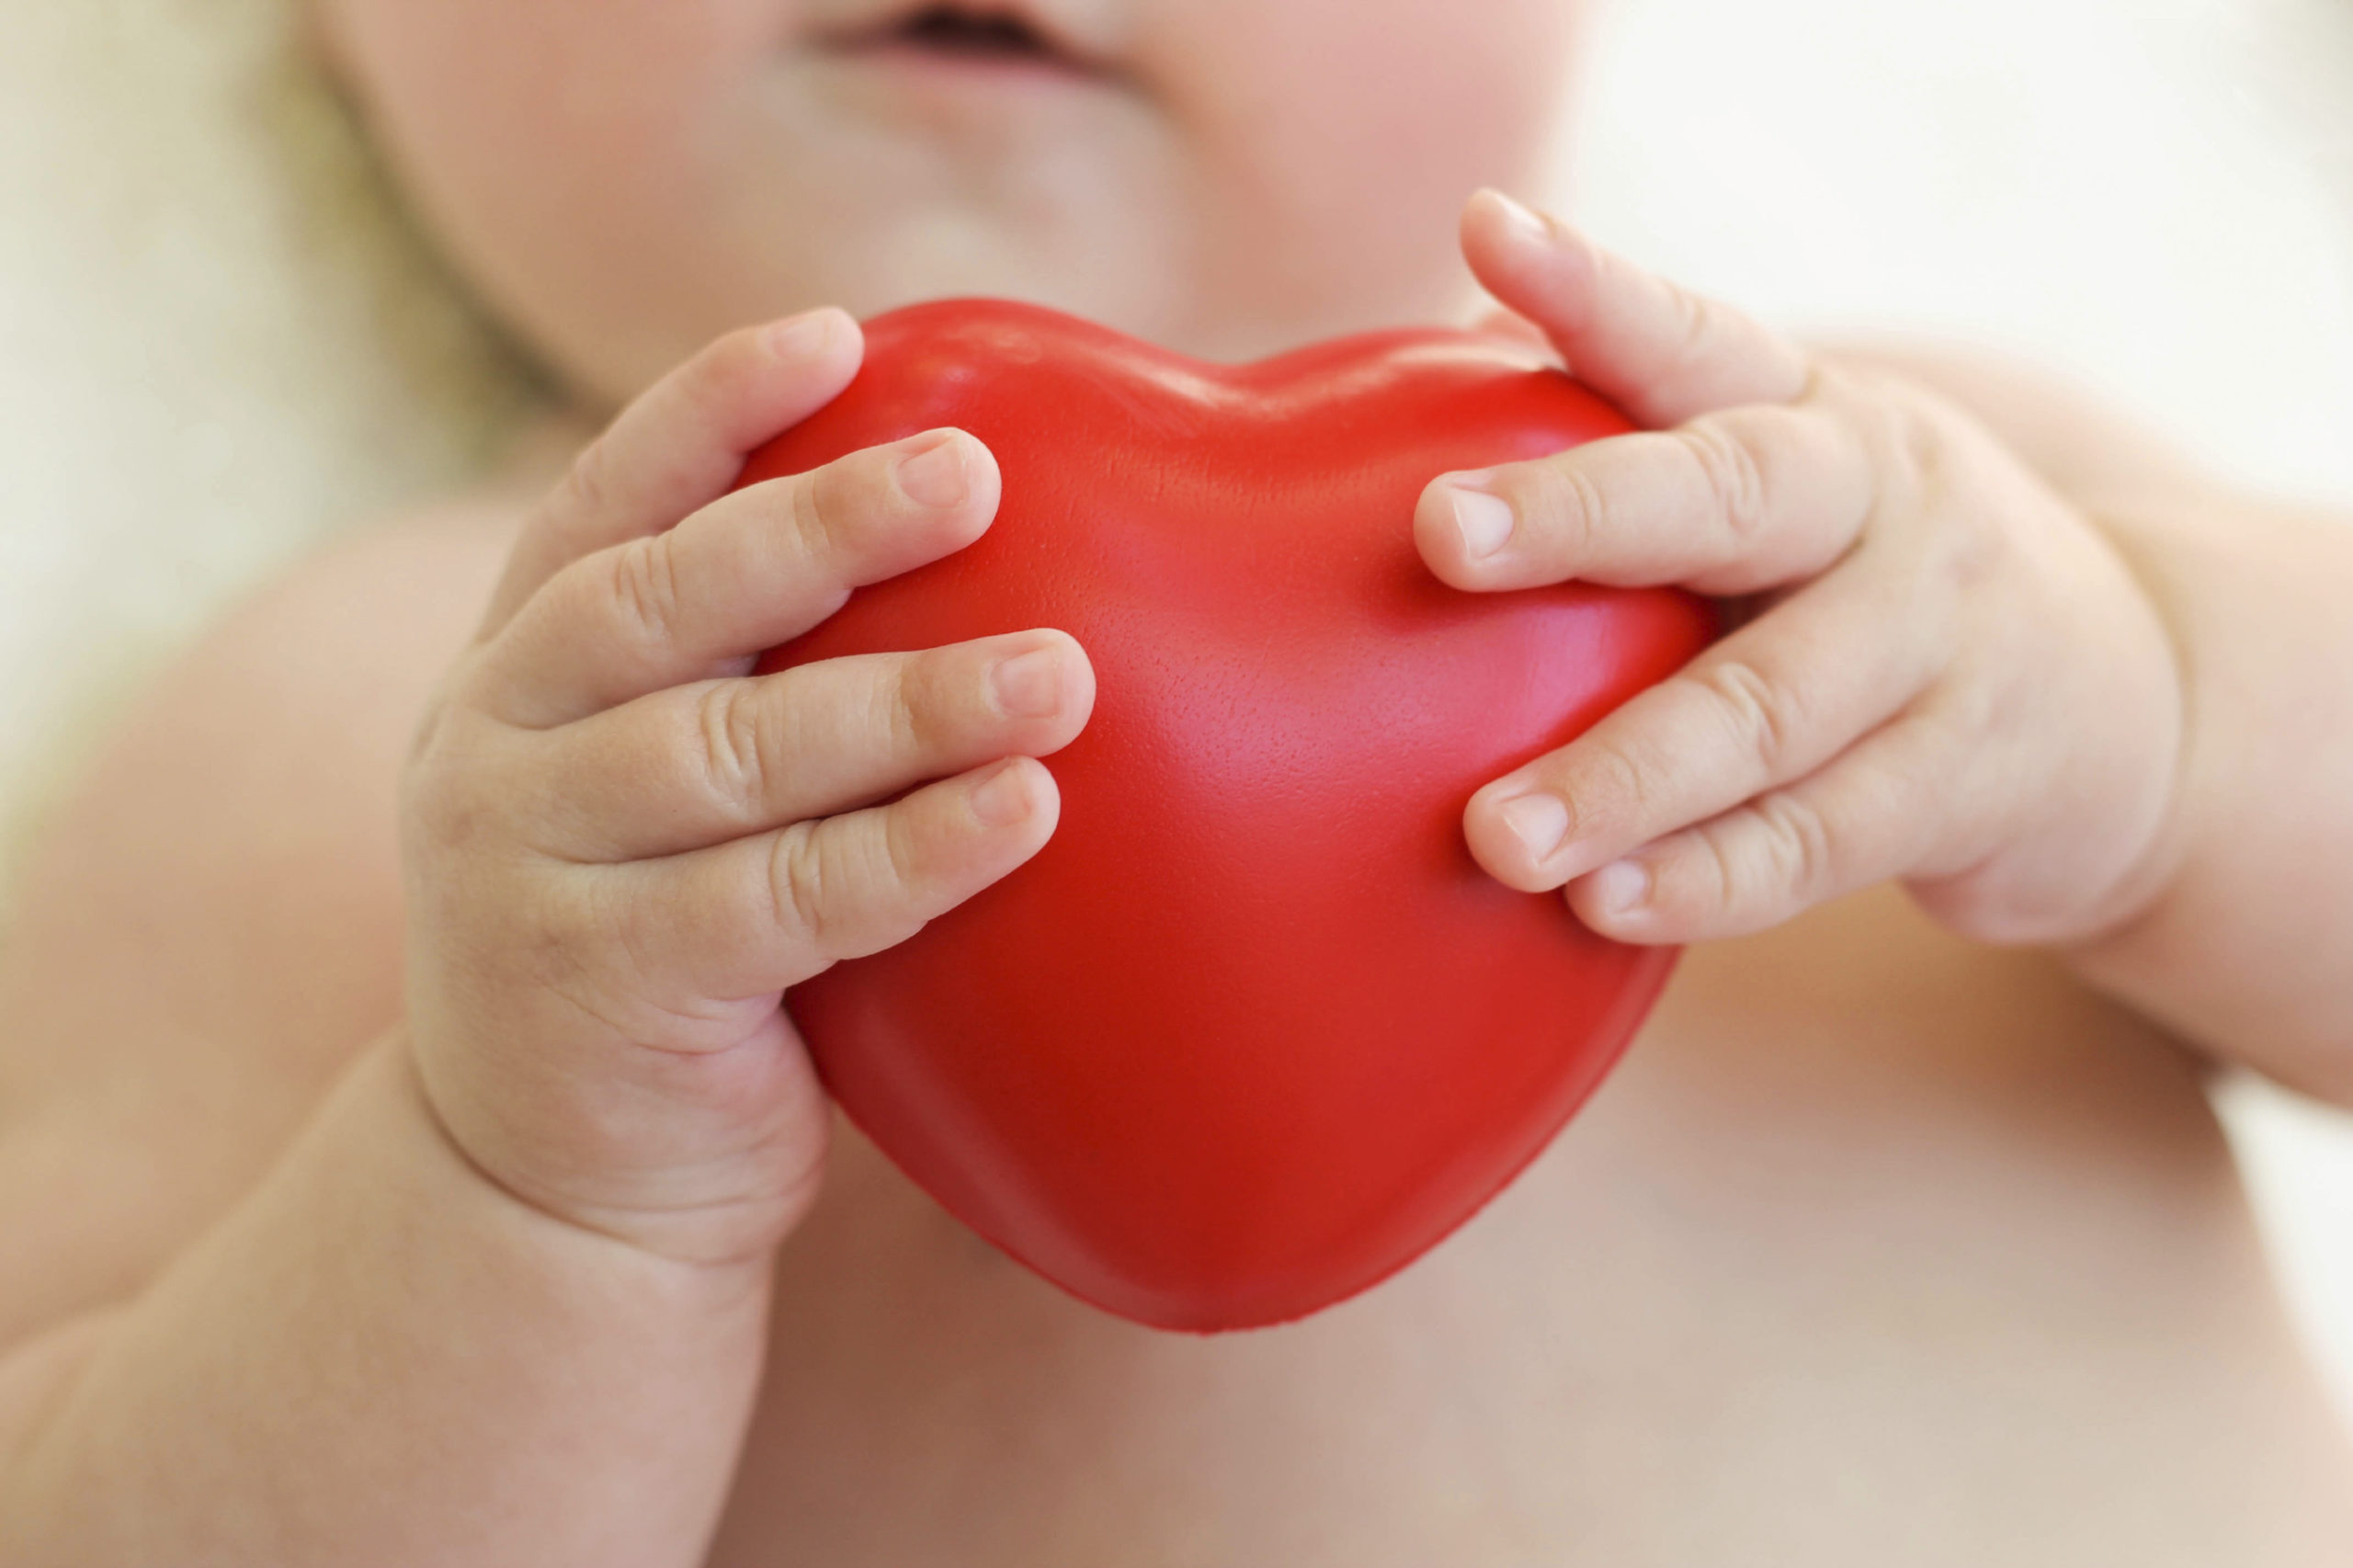 SNS capacita para prevenir cardiopatías congénitas en recién nacidos 